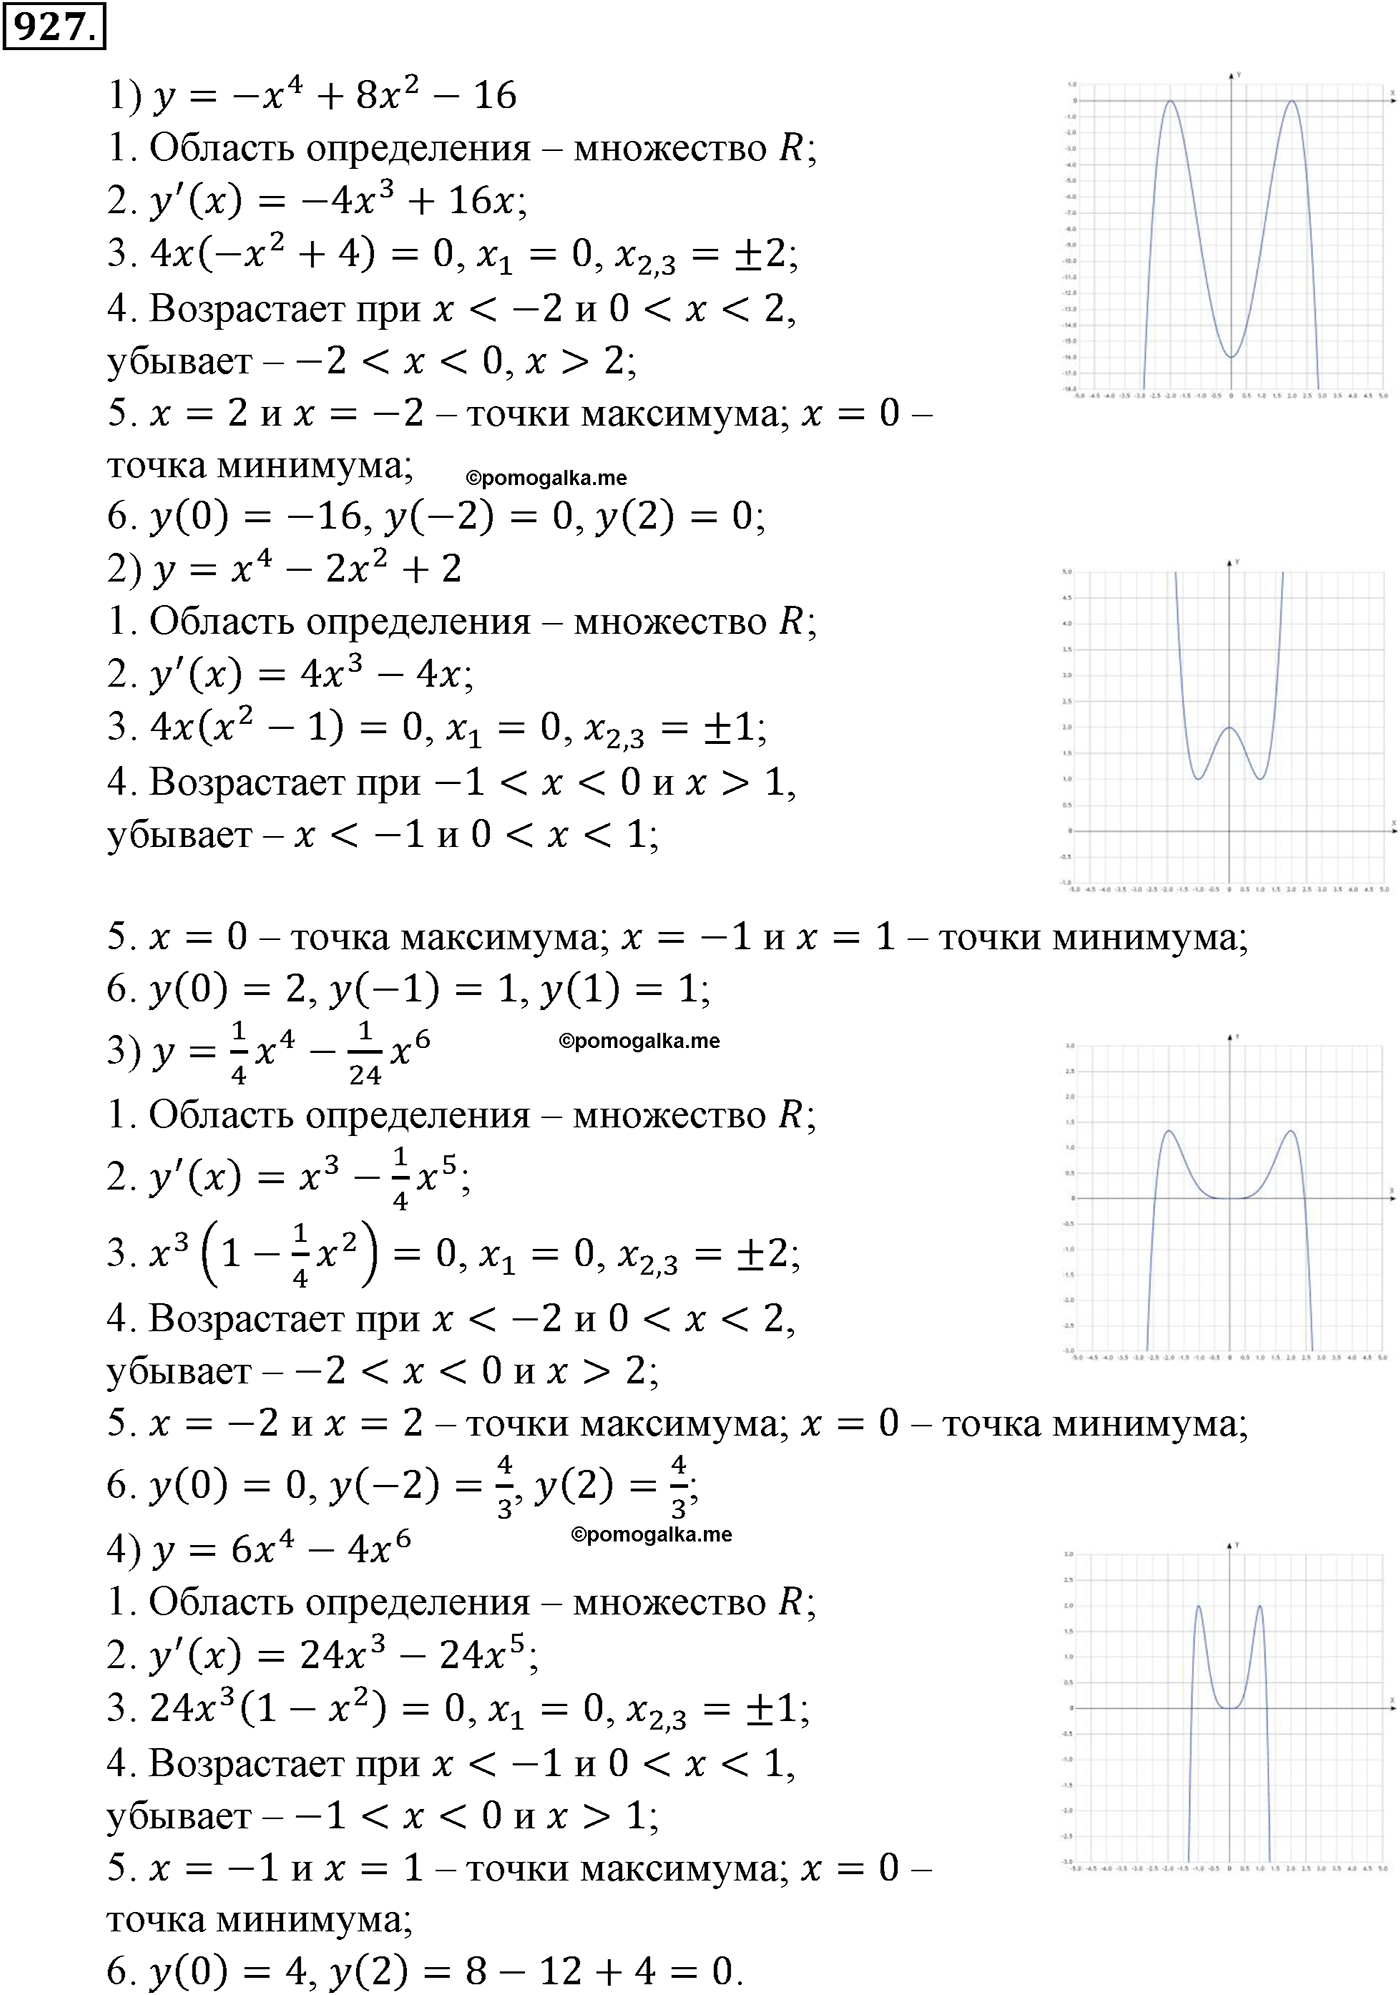 разбор задачи №927 по алгебре за 10-11 класс из учебника Алимова, Колягина